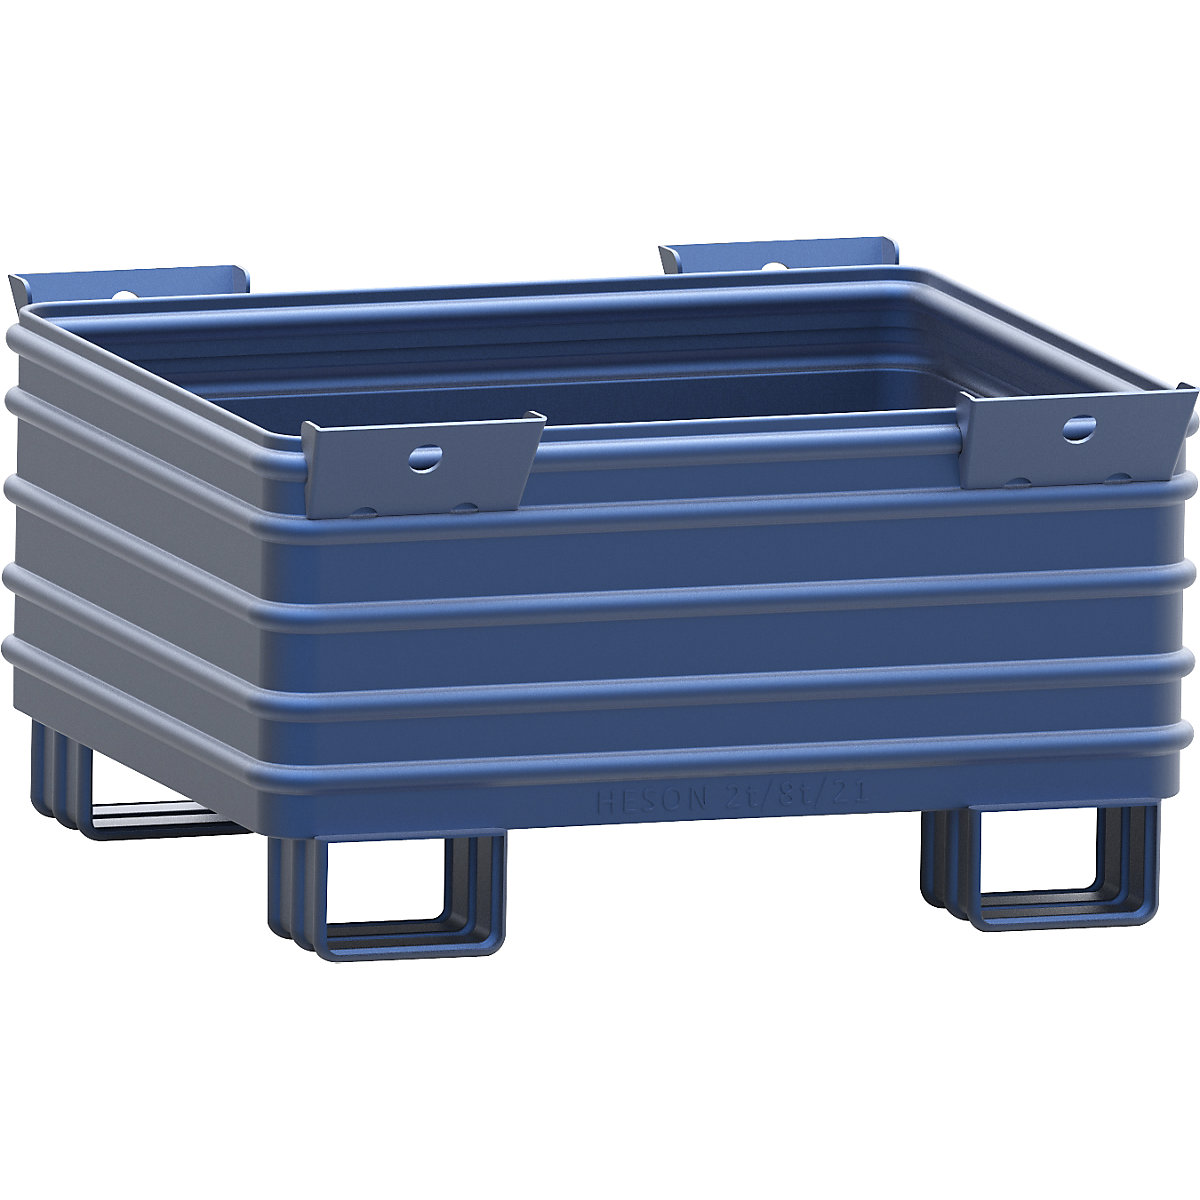 Heavy duty box pallet – Heson